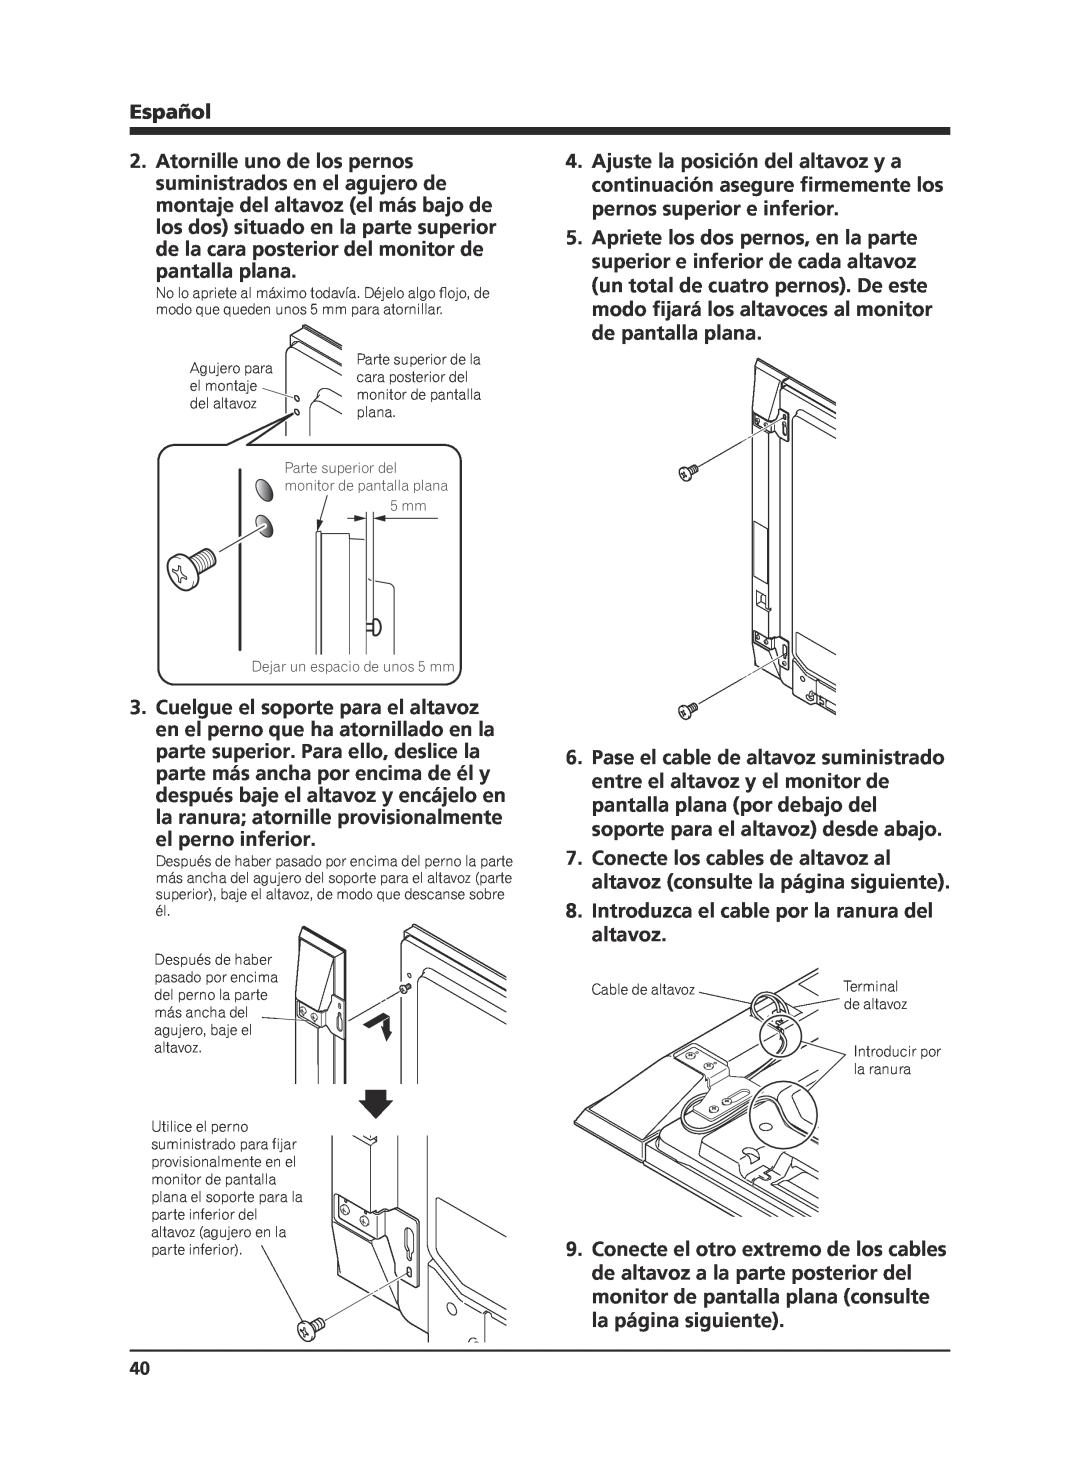 Pioneer KRP-S02 manual pantalla plana, el perno inferior, Introduzca el cable por la ranura del altavoz, Español 